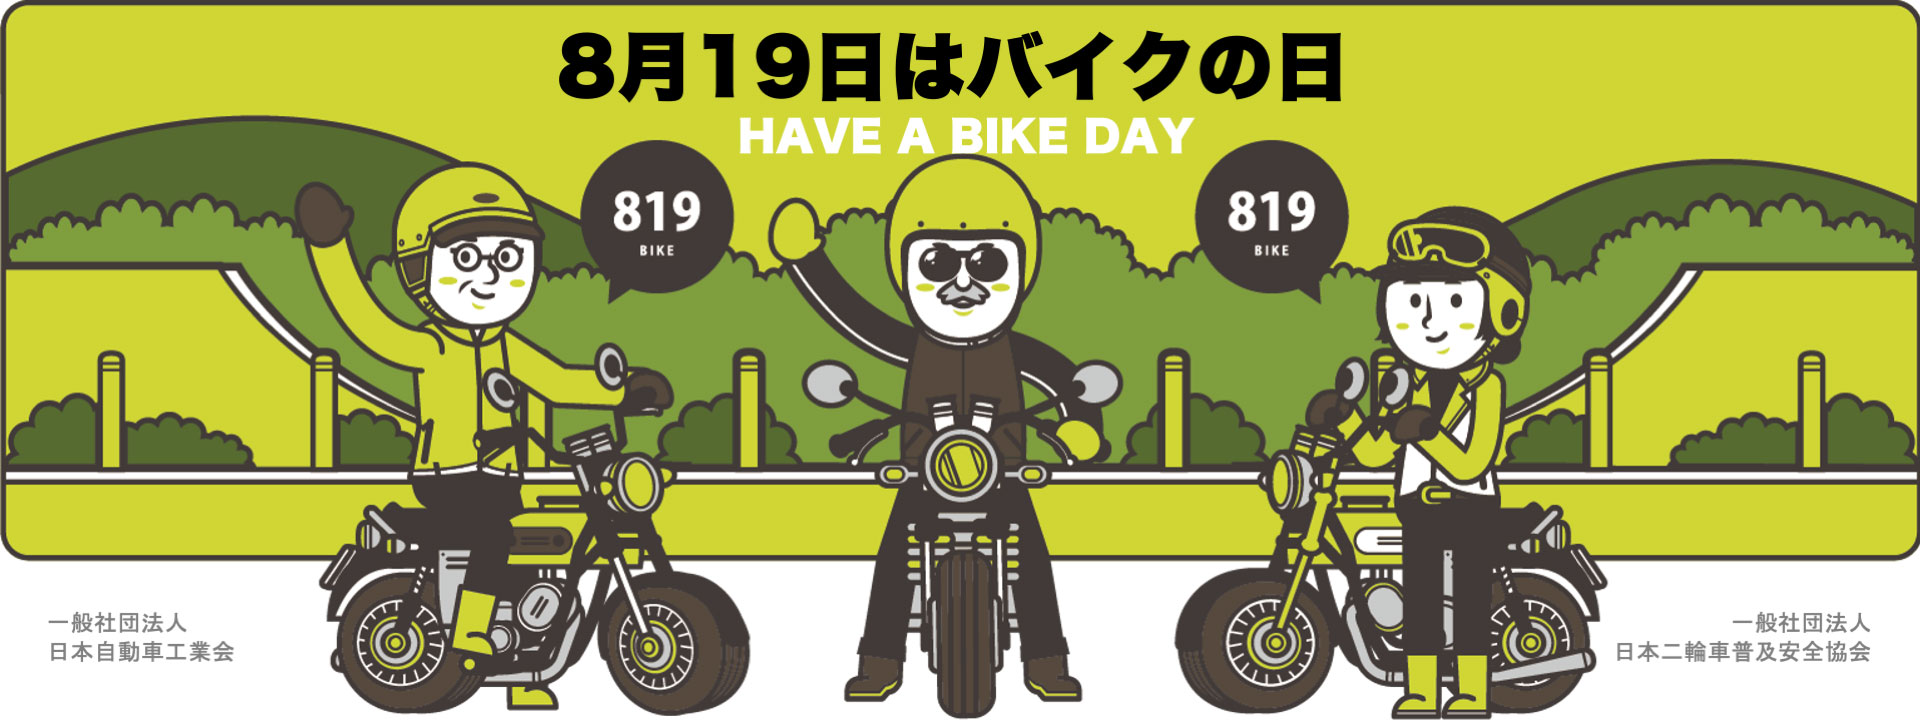 8月19日はバイクの日 HAVE A BIKE DAY